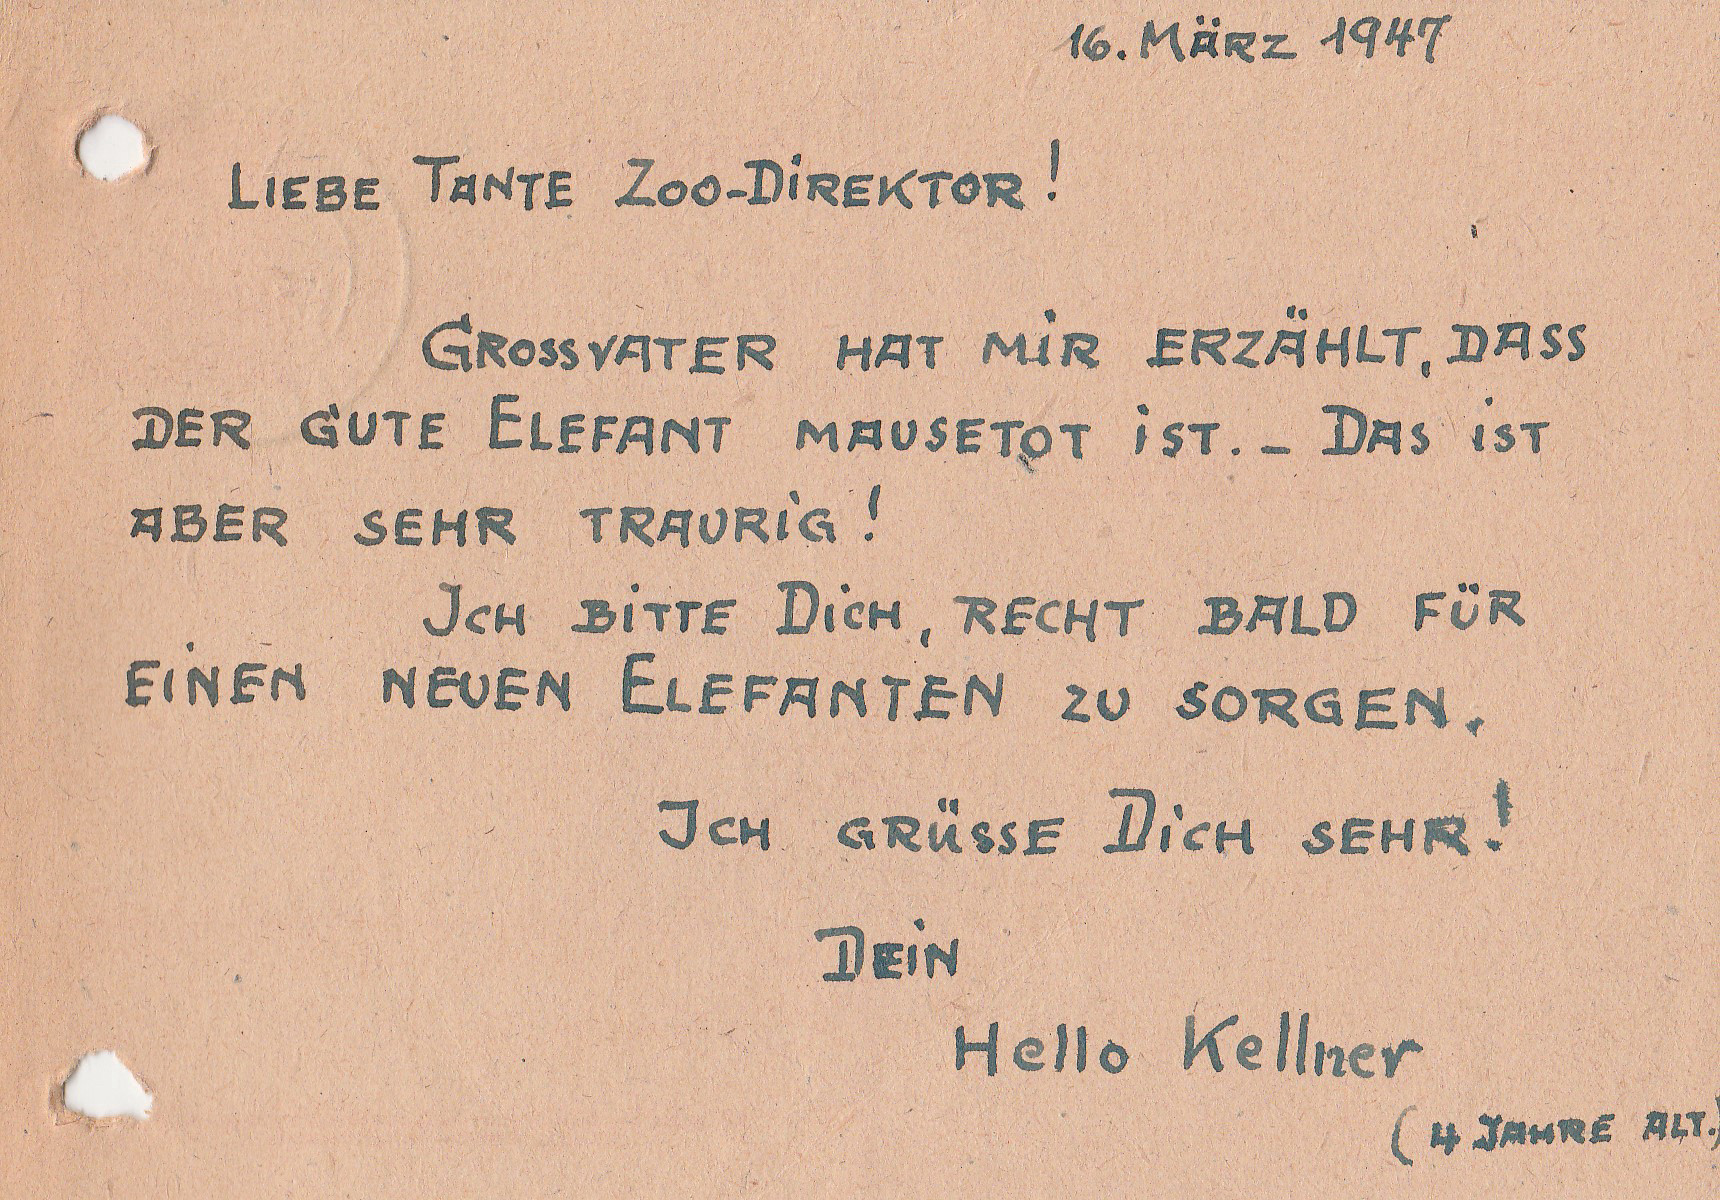 Gelochte, handgeschriebene Postkarte. Text: 16. März 1947. Liebe Tante Zoodirektor! Grossvater hat mir erzählt, dass der gute Elefant tot ist. Das ist aber sehr traurig! Ich bitte dich, recht bald für einen neuen Elefanten zu sorgen. Ich grüsse dich sehr! Dein Hello Kellner (4 Jahre alt).